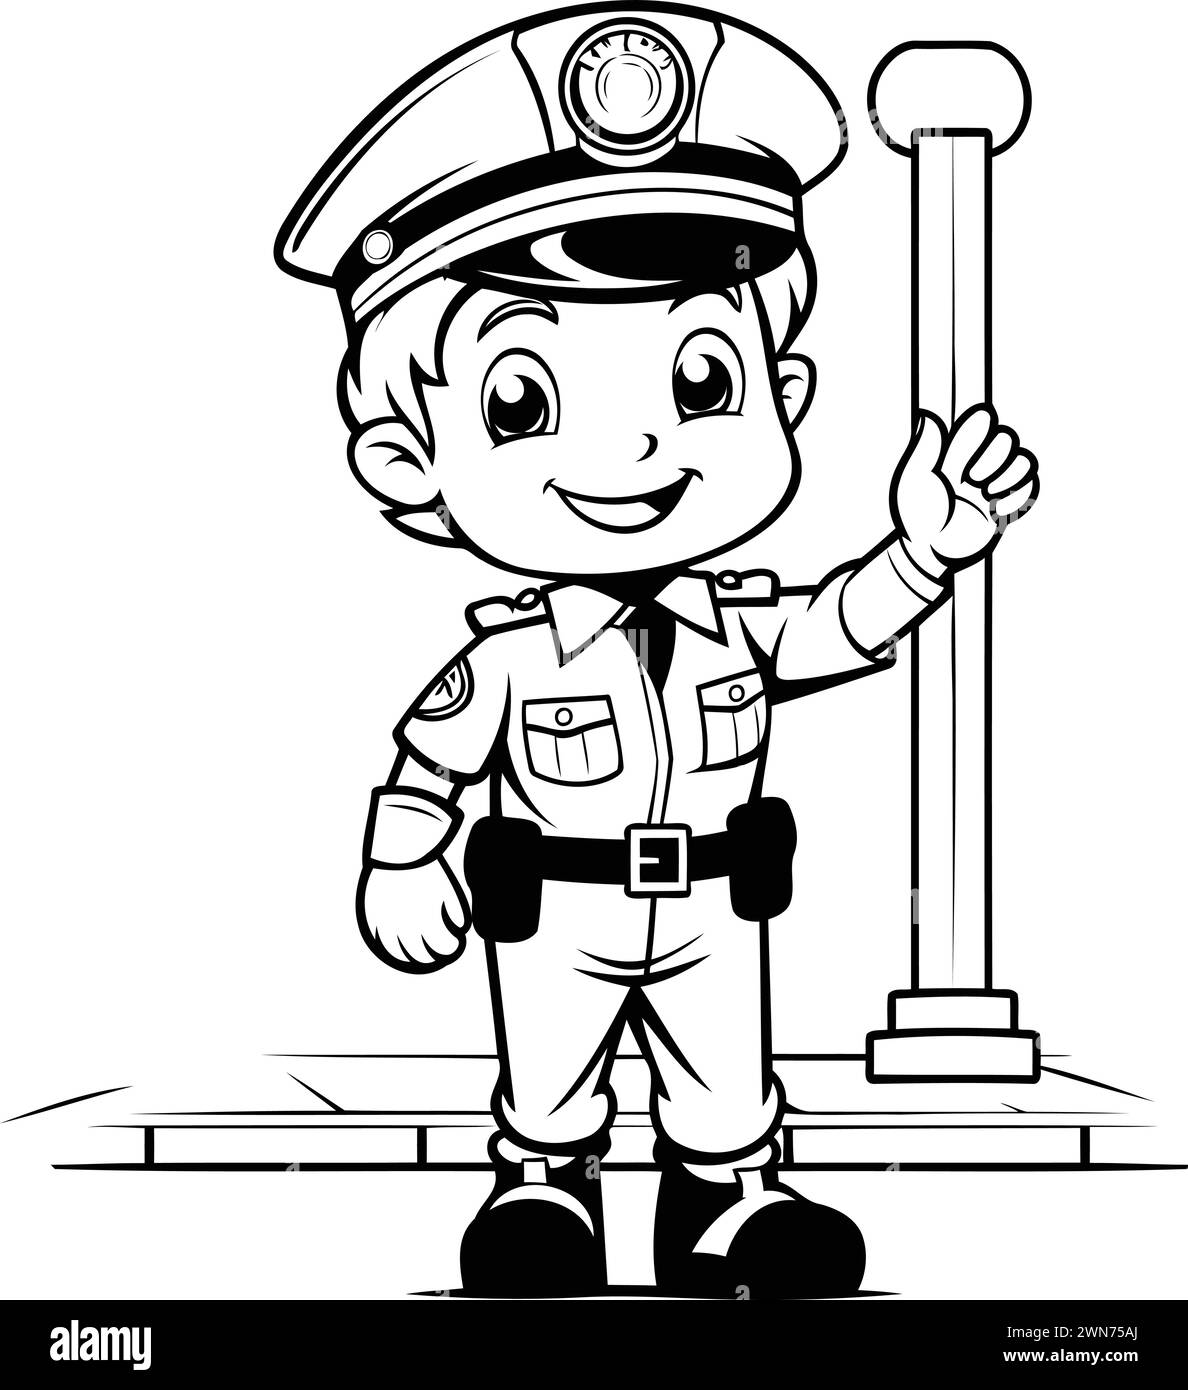 Schwarz-weiß-Zeichentrick-Illustration eines kleinen Polizisten oder Polizisten Figur für Malbuch Stock Vektor